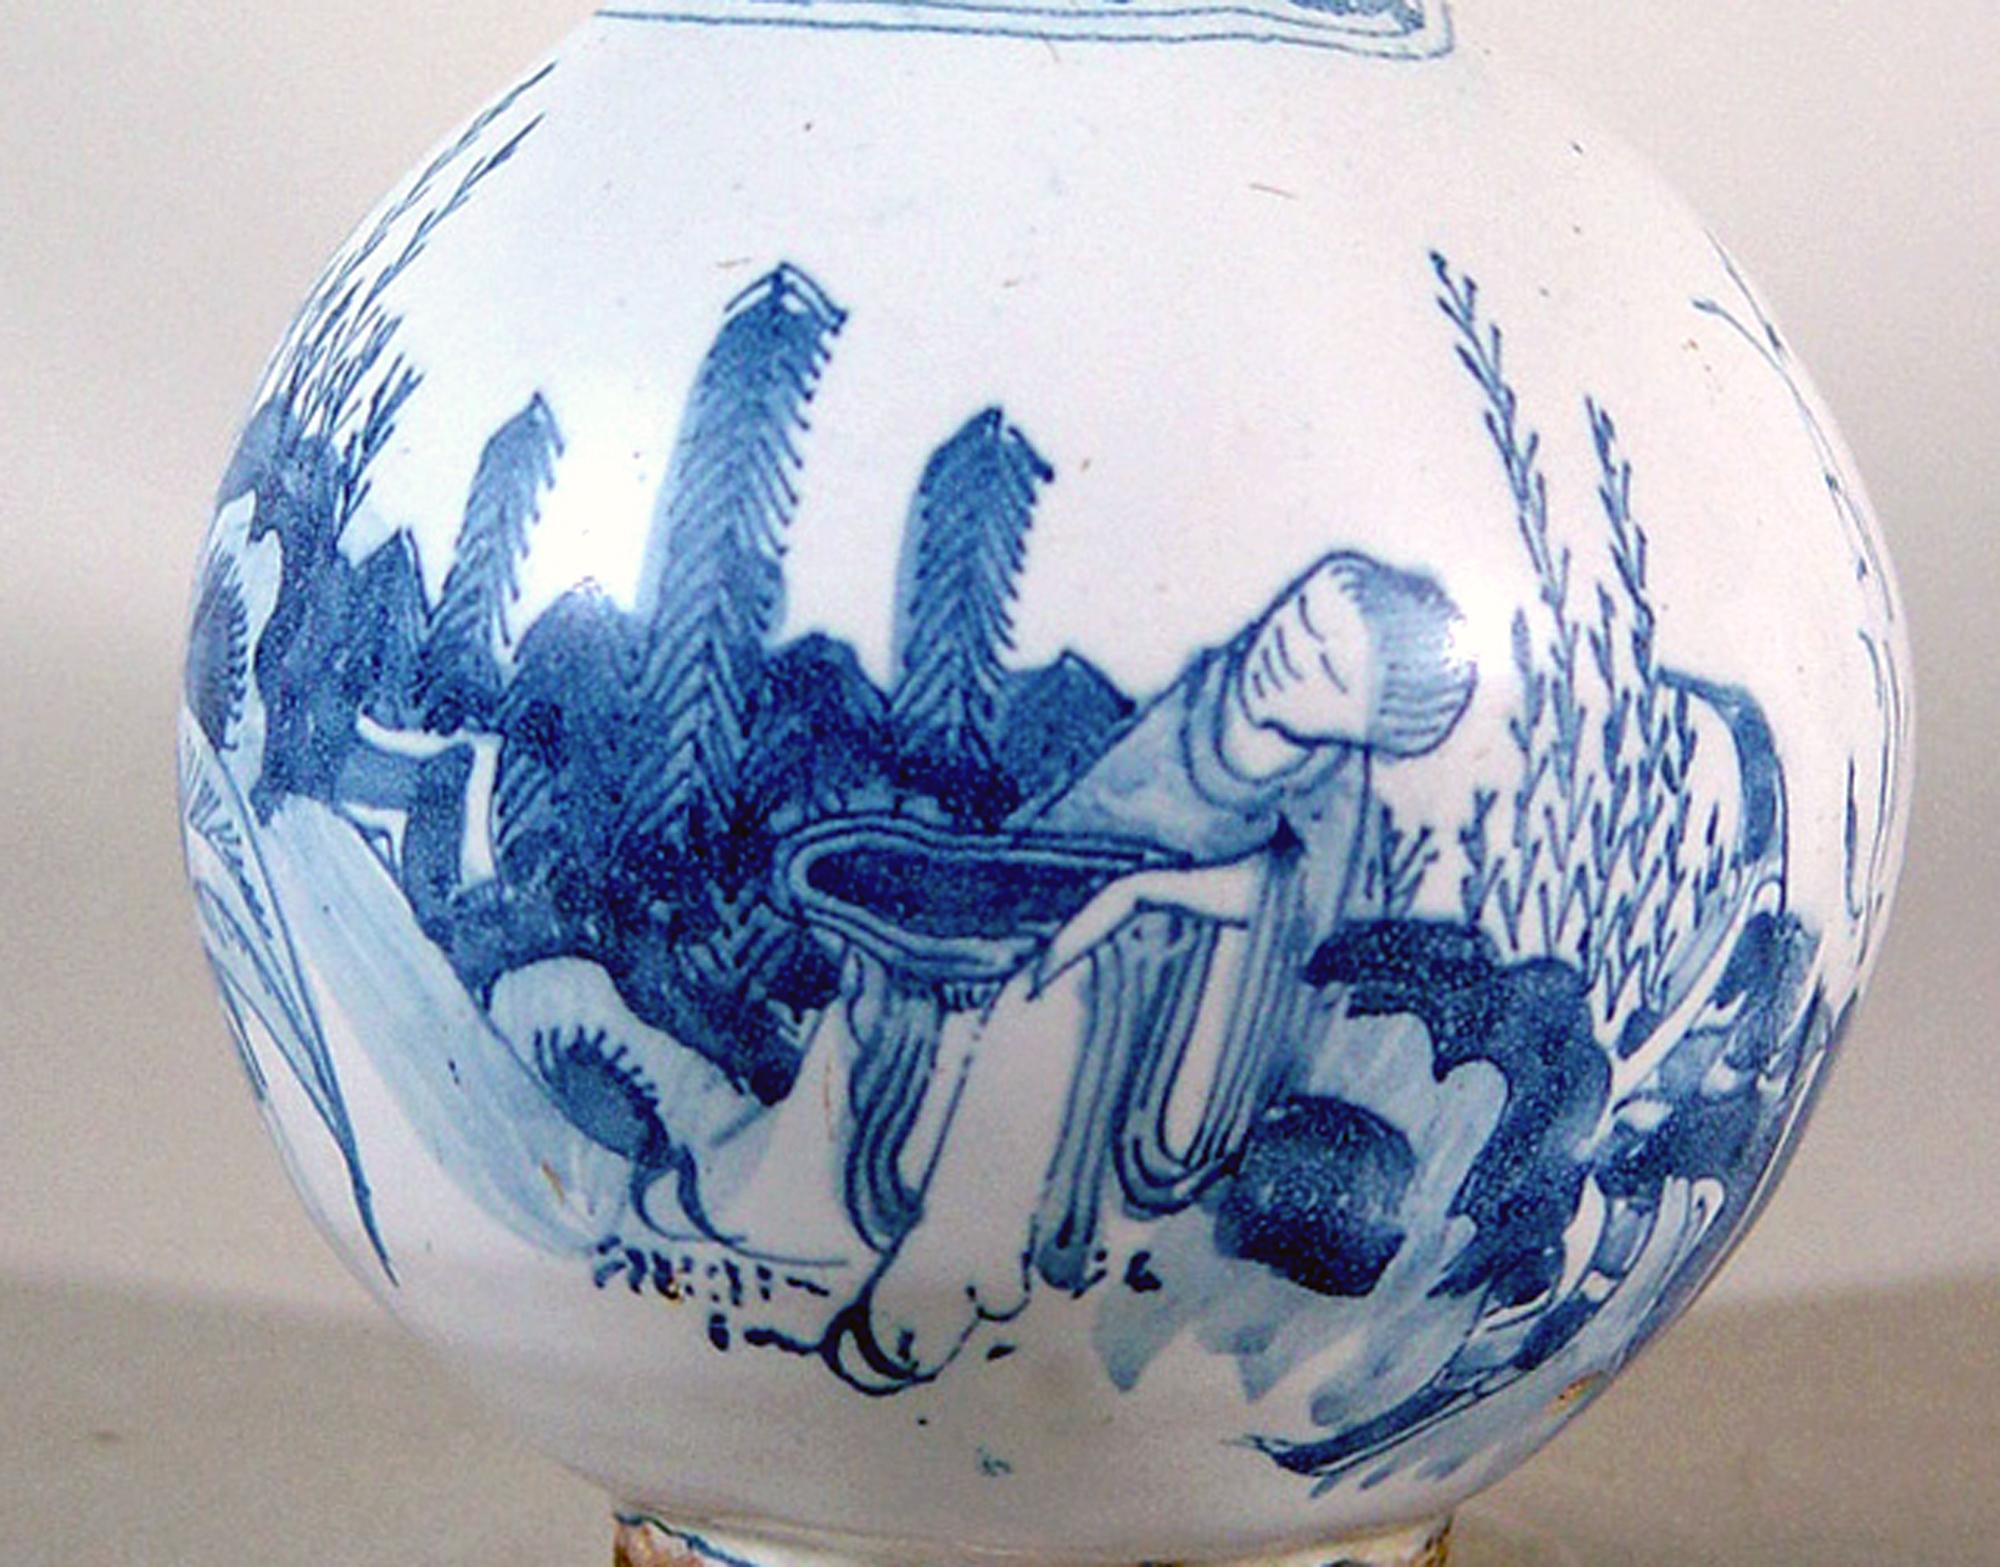 Vase bouteille à col trompette en faïence allemande de Whiting du 17e siècle, bleu et blanc,
vers 1680-90.

Le vase est décoré en bleu et blanc sous glaçure d'un paysage de chinoiserie avec une figure chinoise avec des bananiers et des rochers